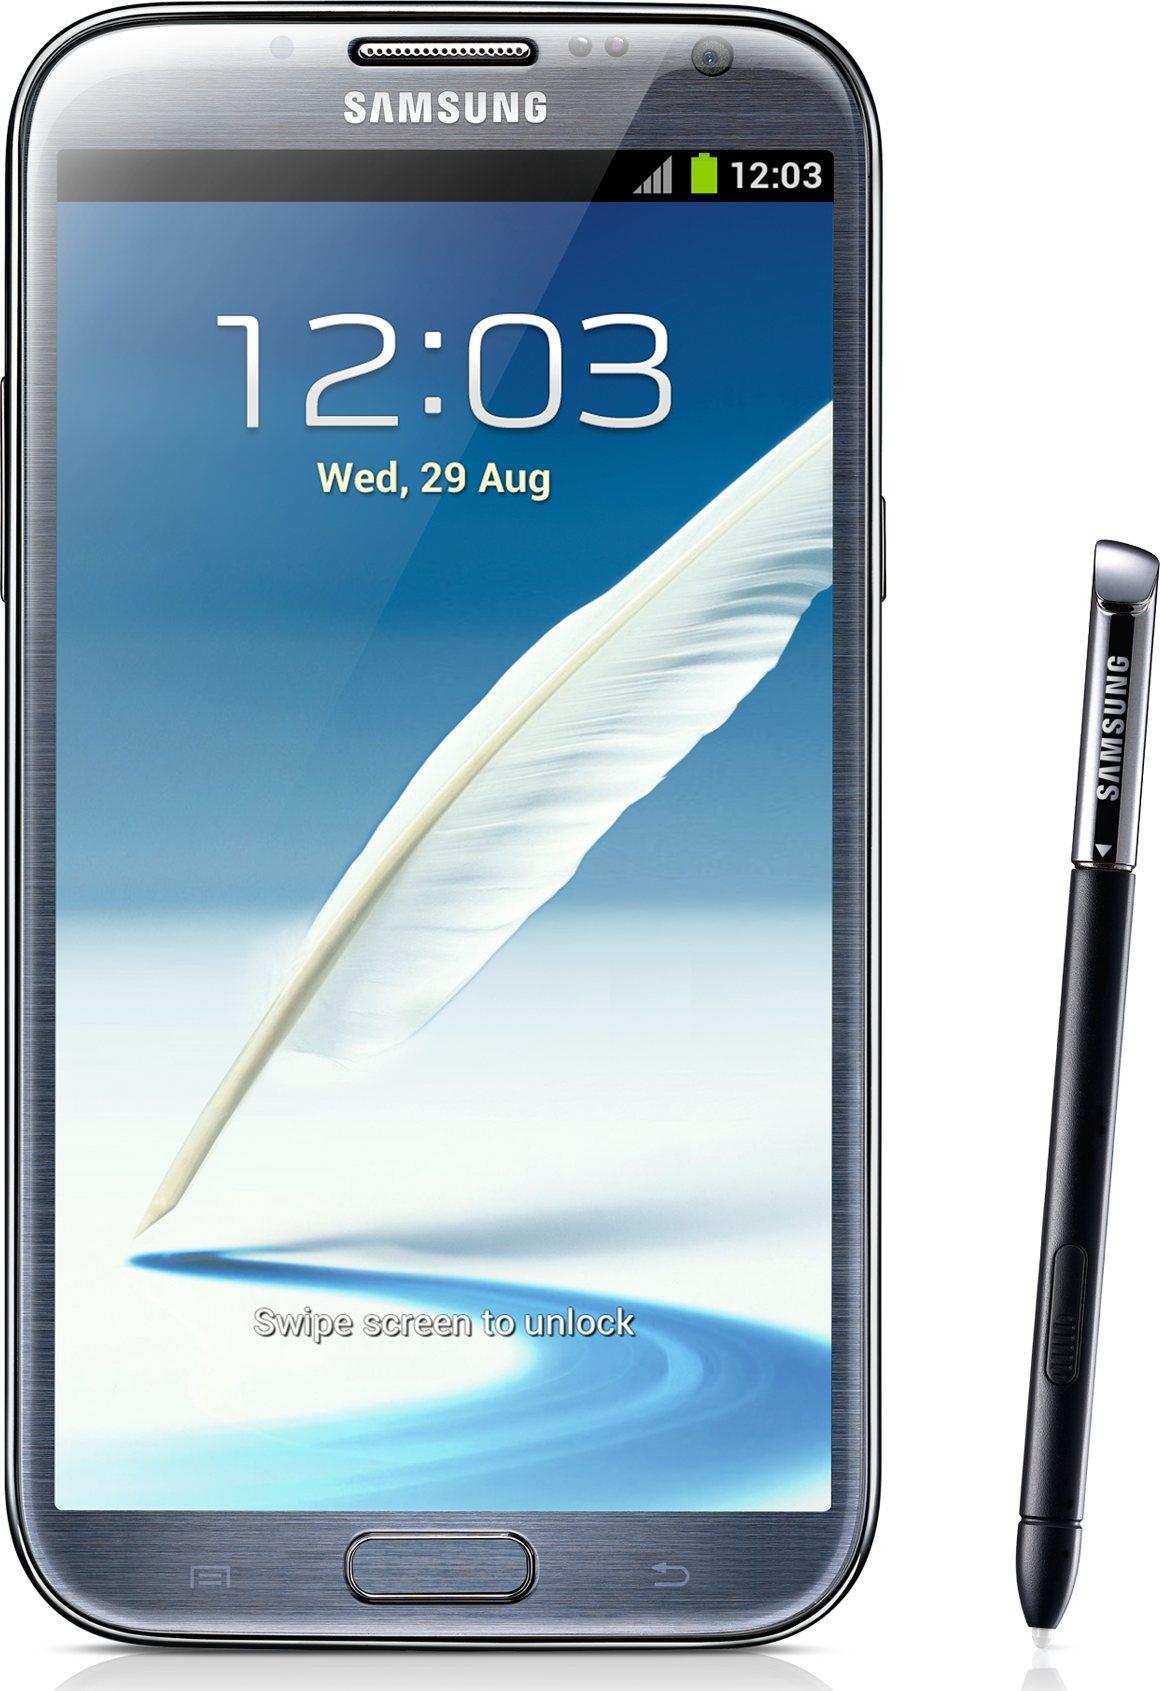 Galaxy Note 2 (A GT-N7100T